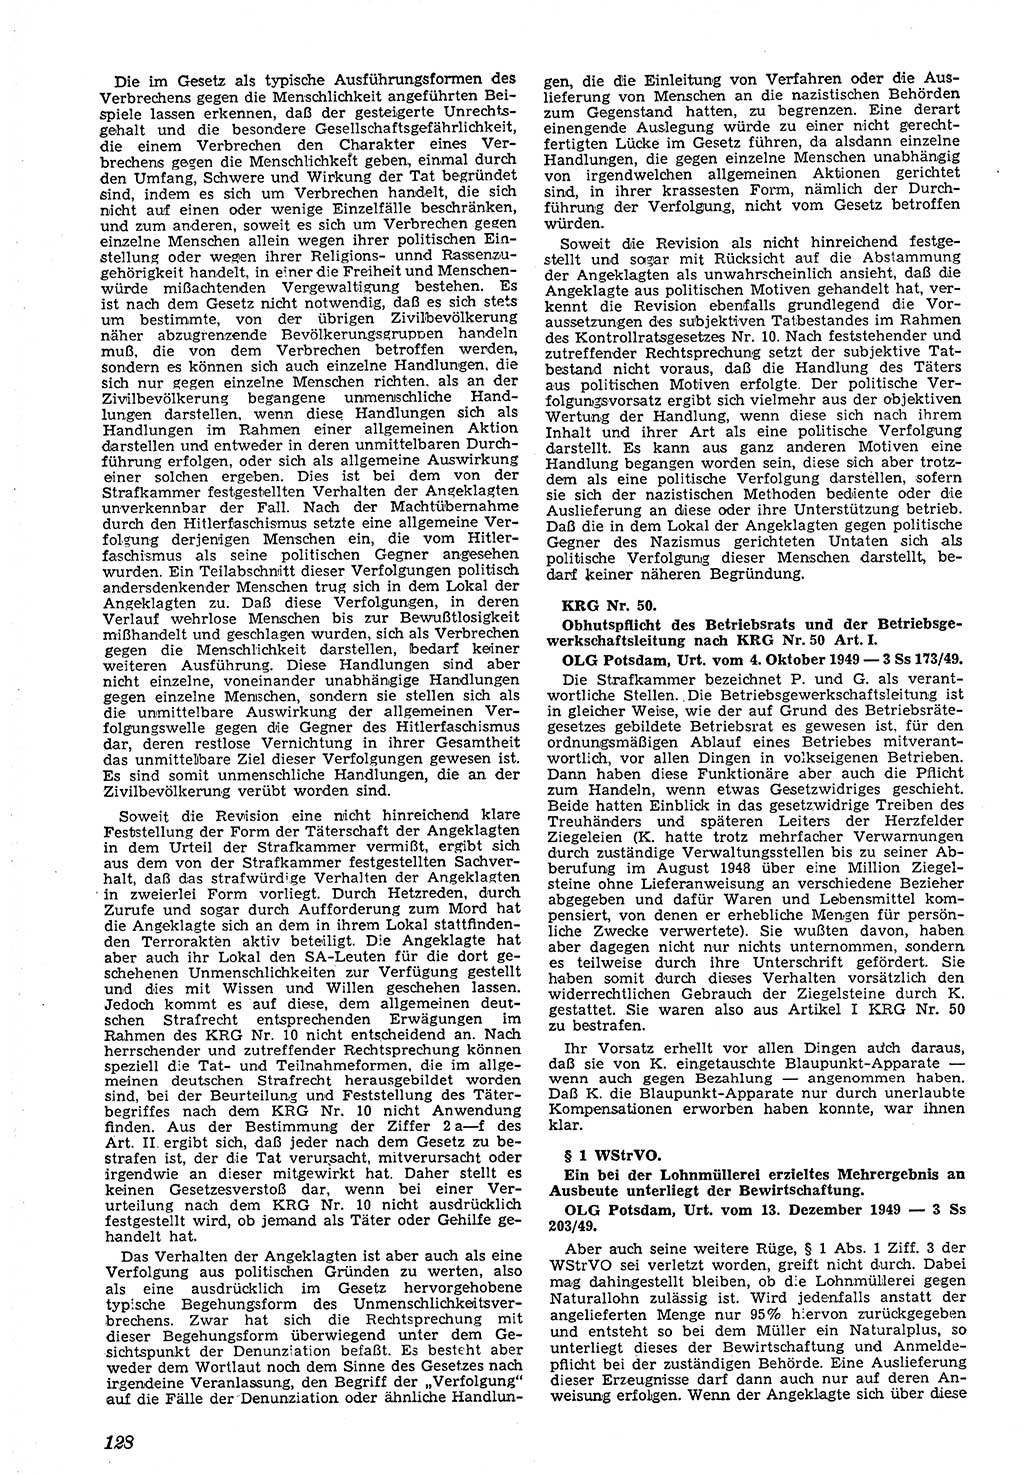 Neue Justiz (NJ), Zeitschrift für Recht und Rechtswissenschaft [Deutsche Demokratische Republik (DDR)], 4. Jahrgang 1950, Seite 128 (NJ DDR 1950, S. 128)